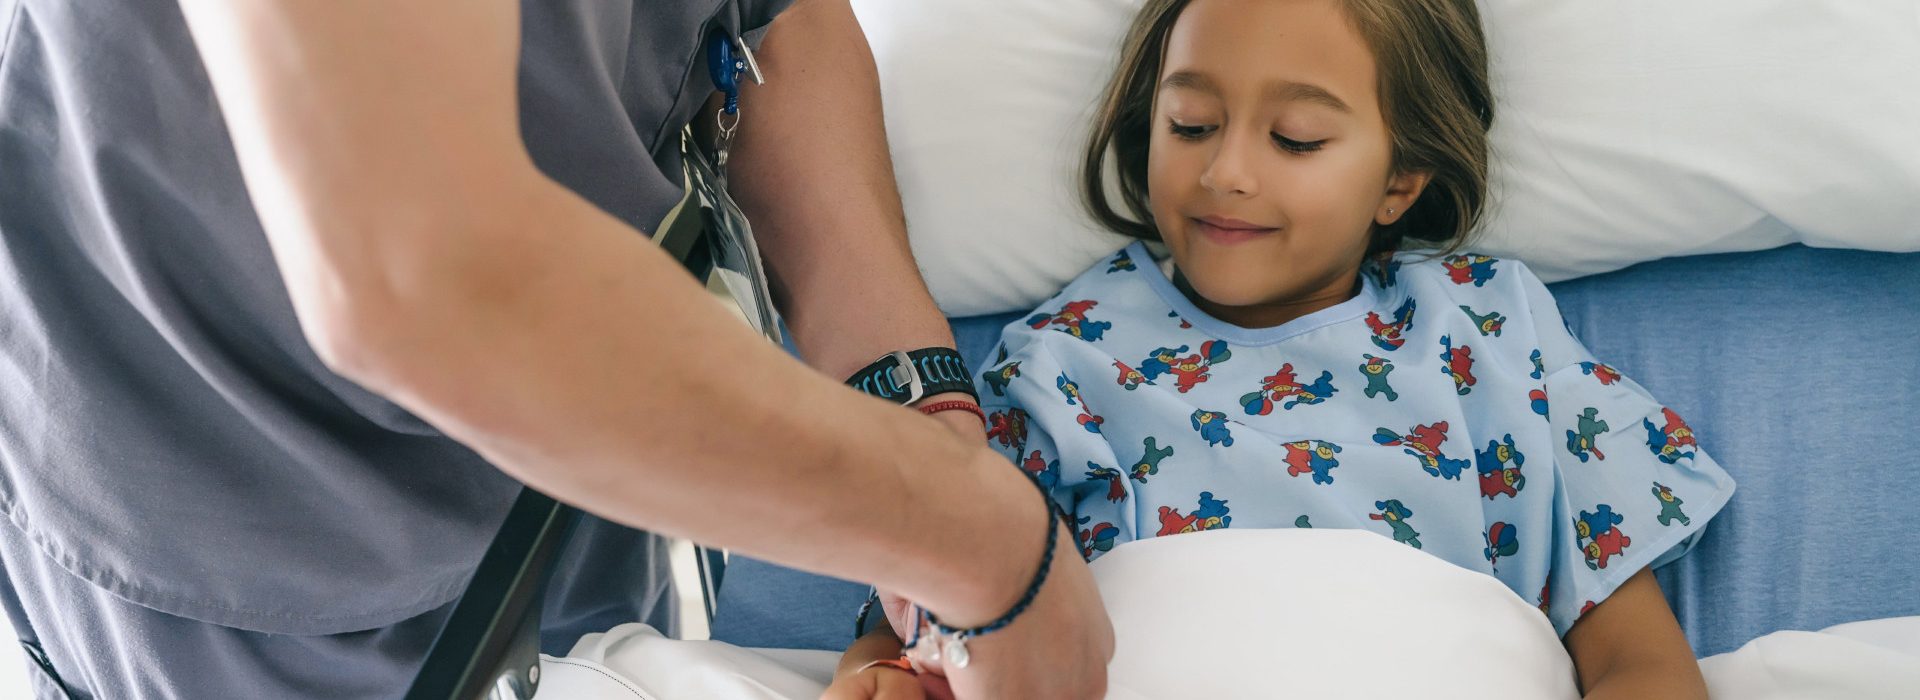 Une petite fille dans un lit d'hôpital avec un médecin qui lui met un bracelet